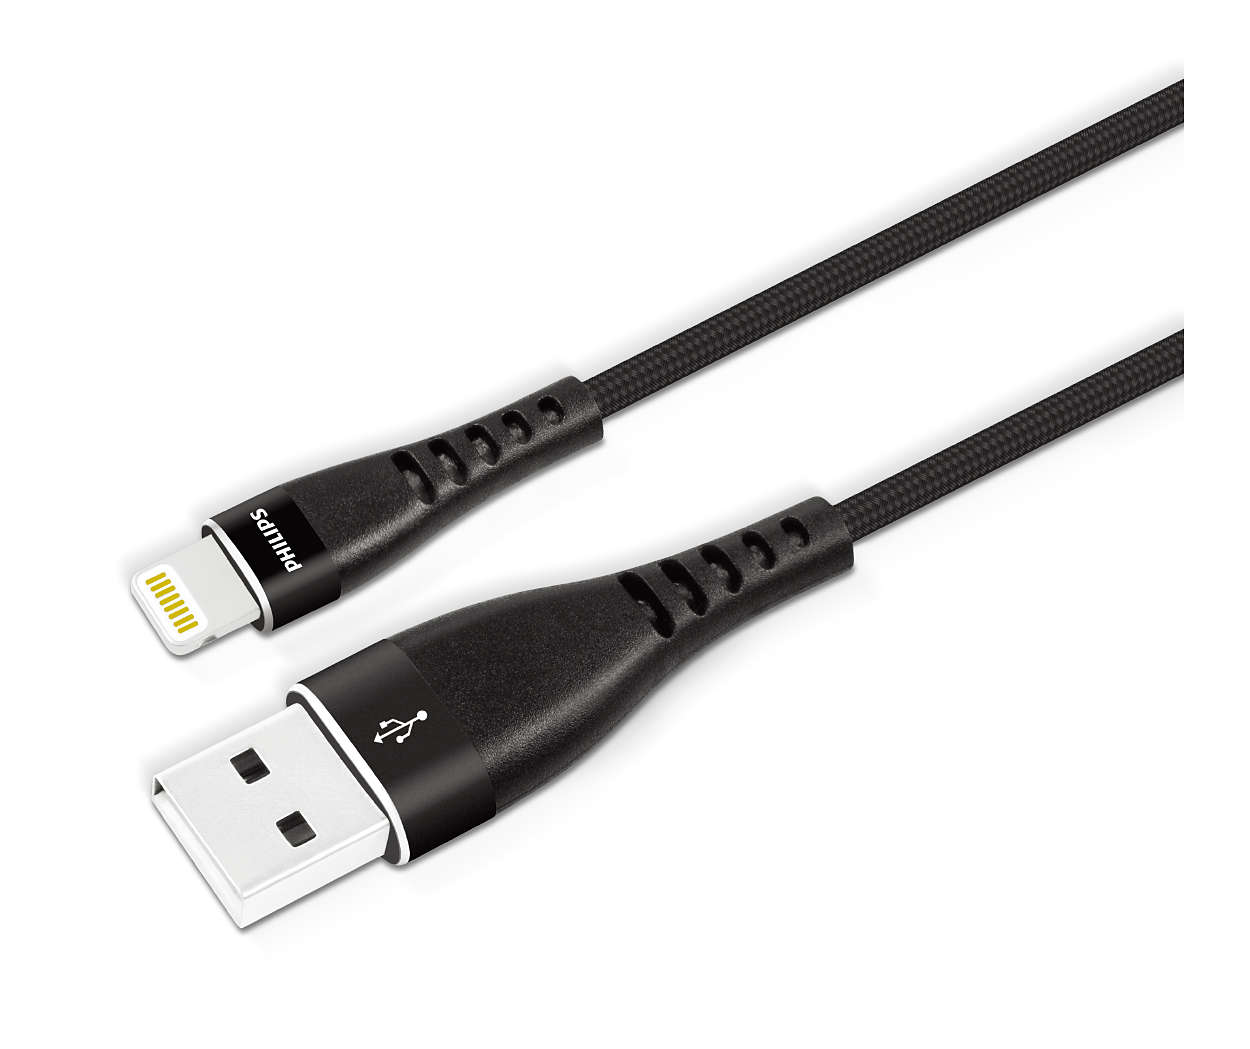 Κορυφαίας ποιότητας καλώδιο USB-A σε Lightning με πλεκτή θωράκιση